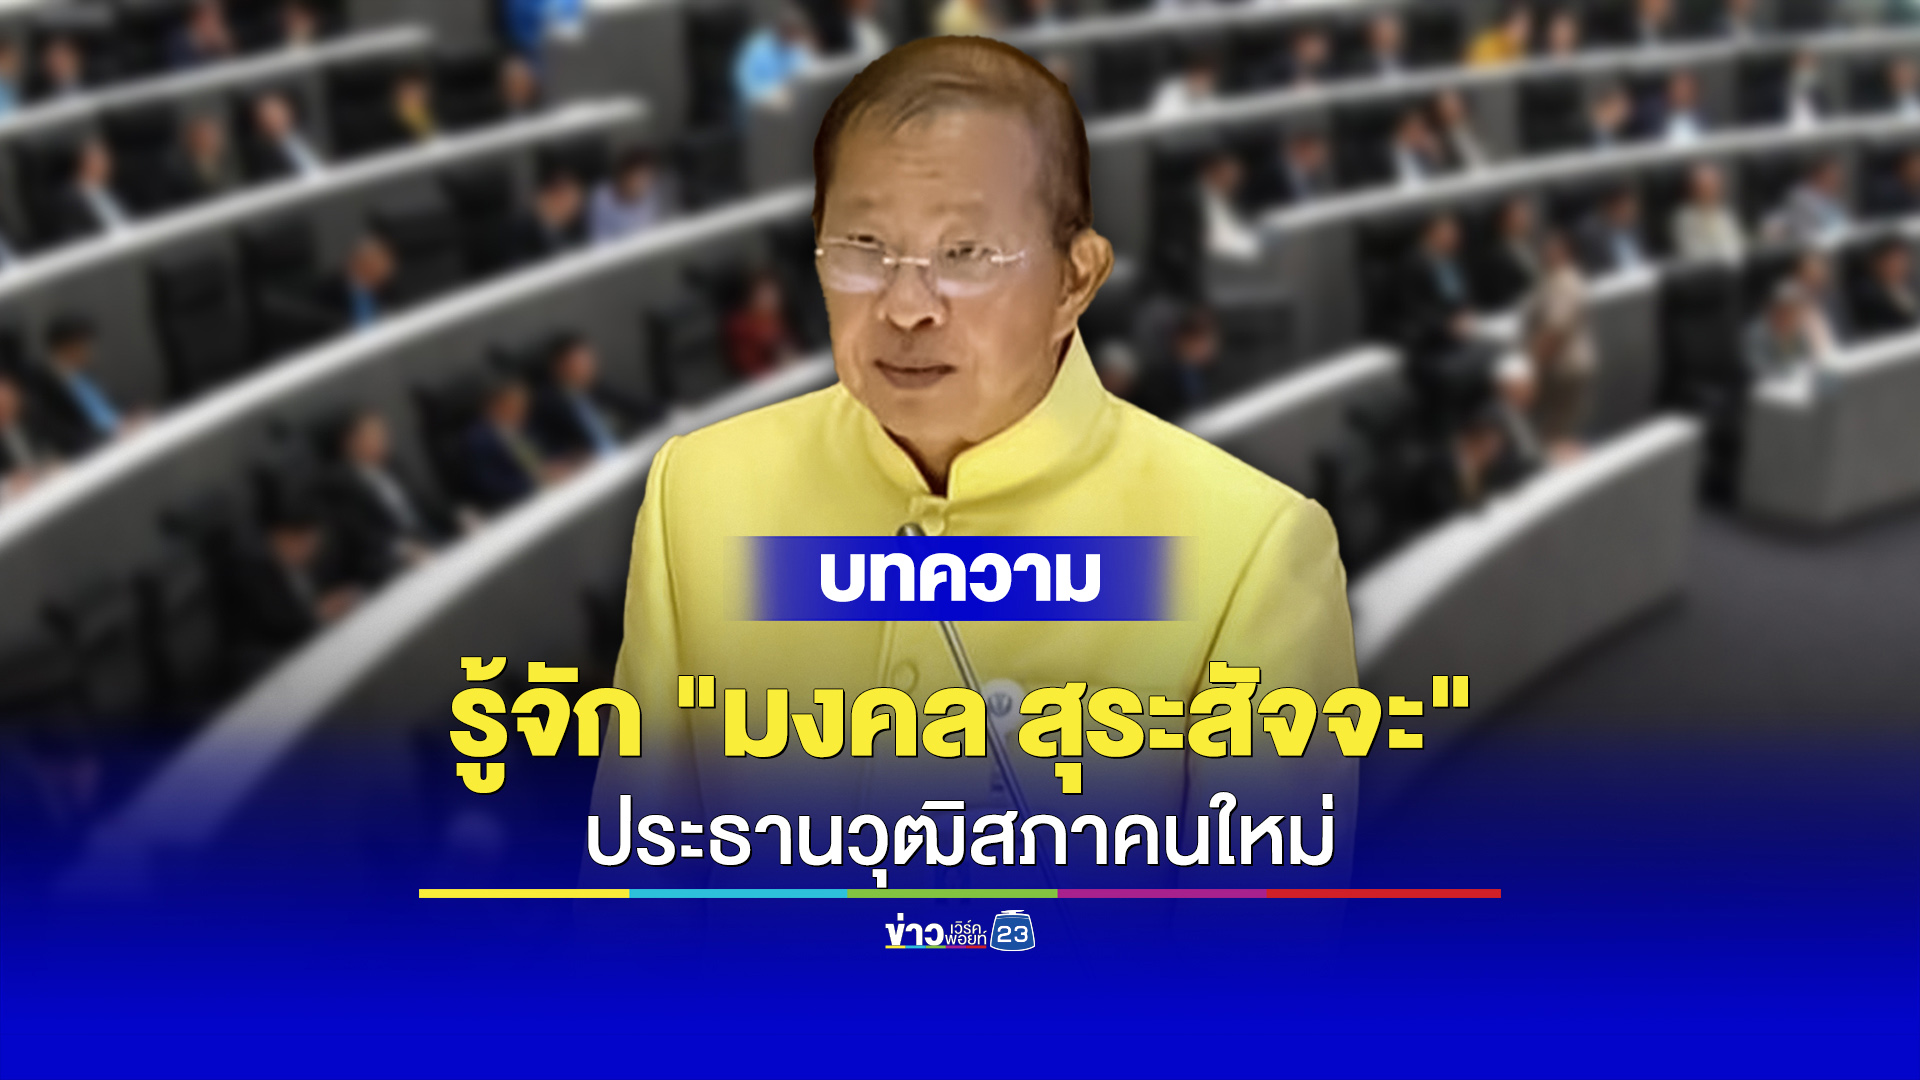 มงคล สุระสัจจะ ประธานวุฒิสภาไทยคนใหม่